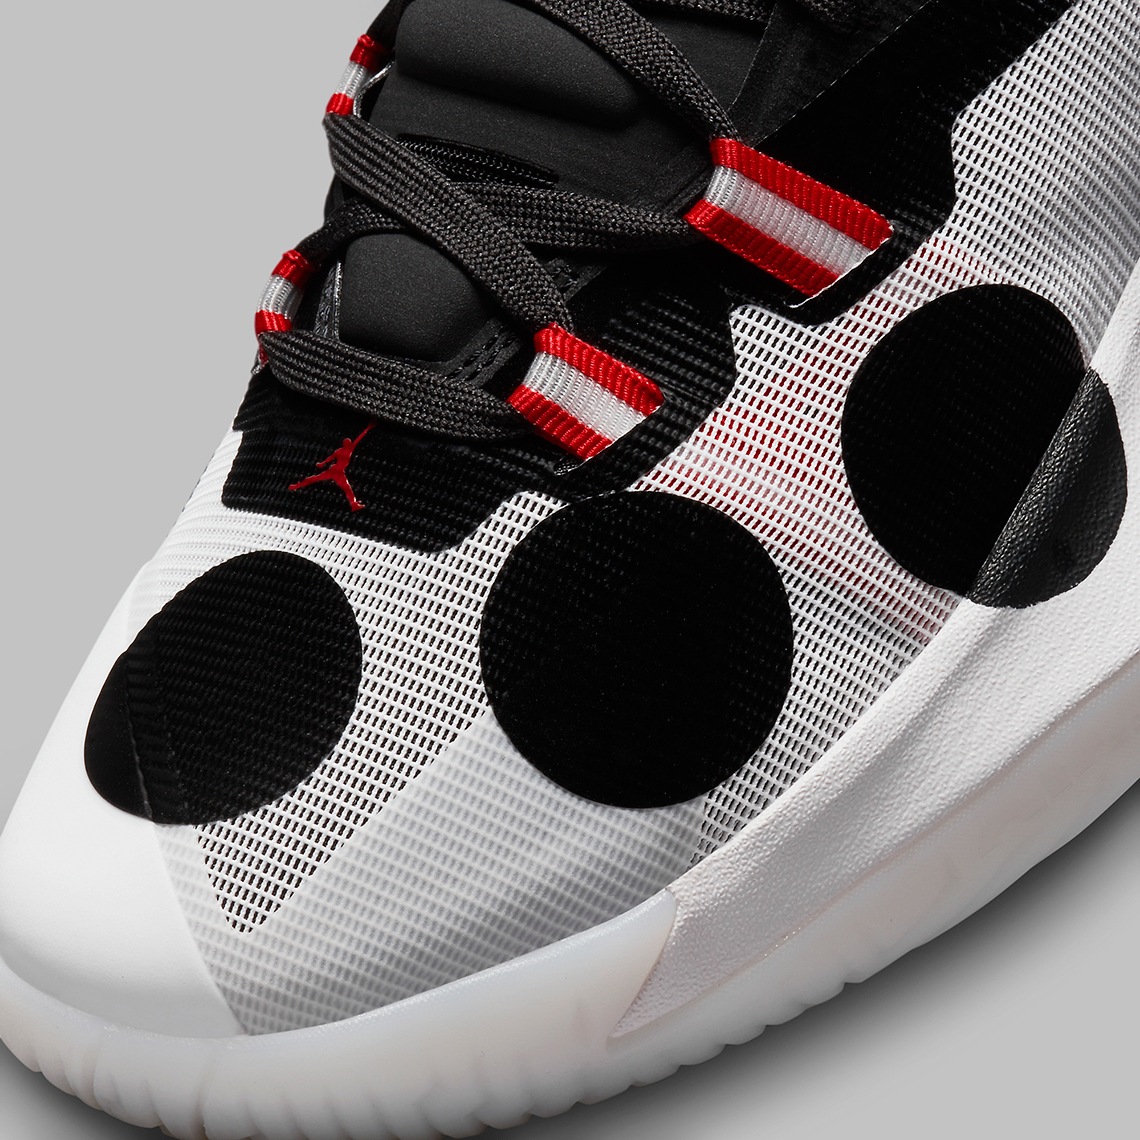 NWT Nike Jordan Mars 270 London Sp White University Red Black Dq4706 160 5